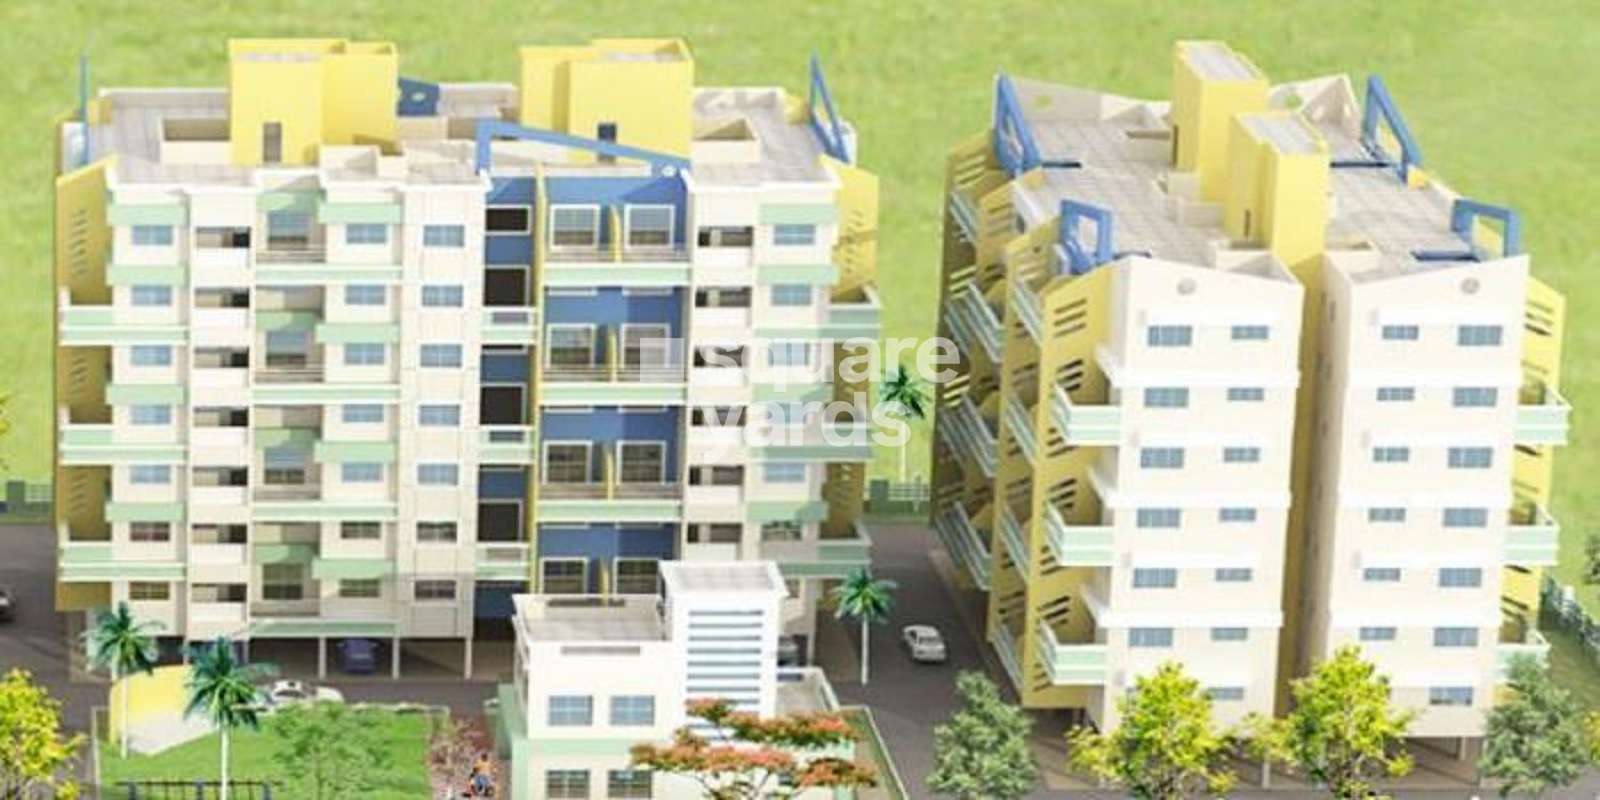 Subhagya Saptarshi Residency Phase III Cover Image